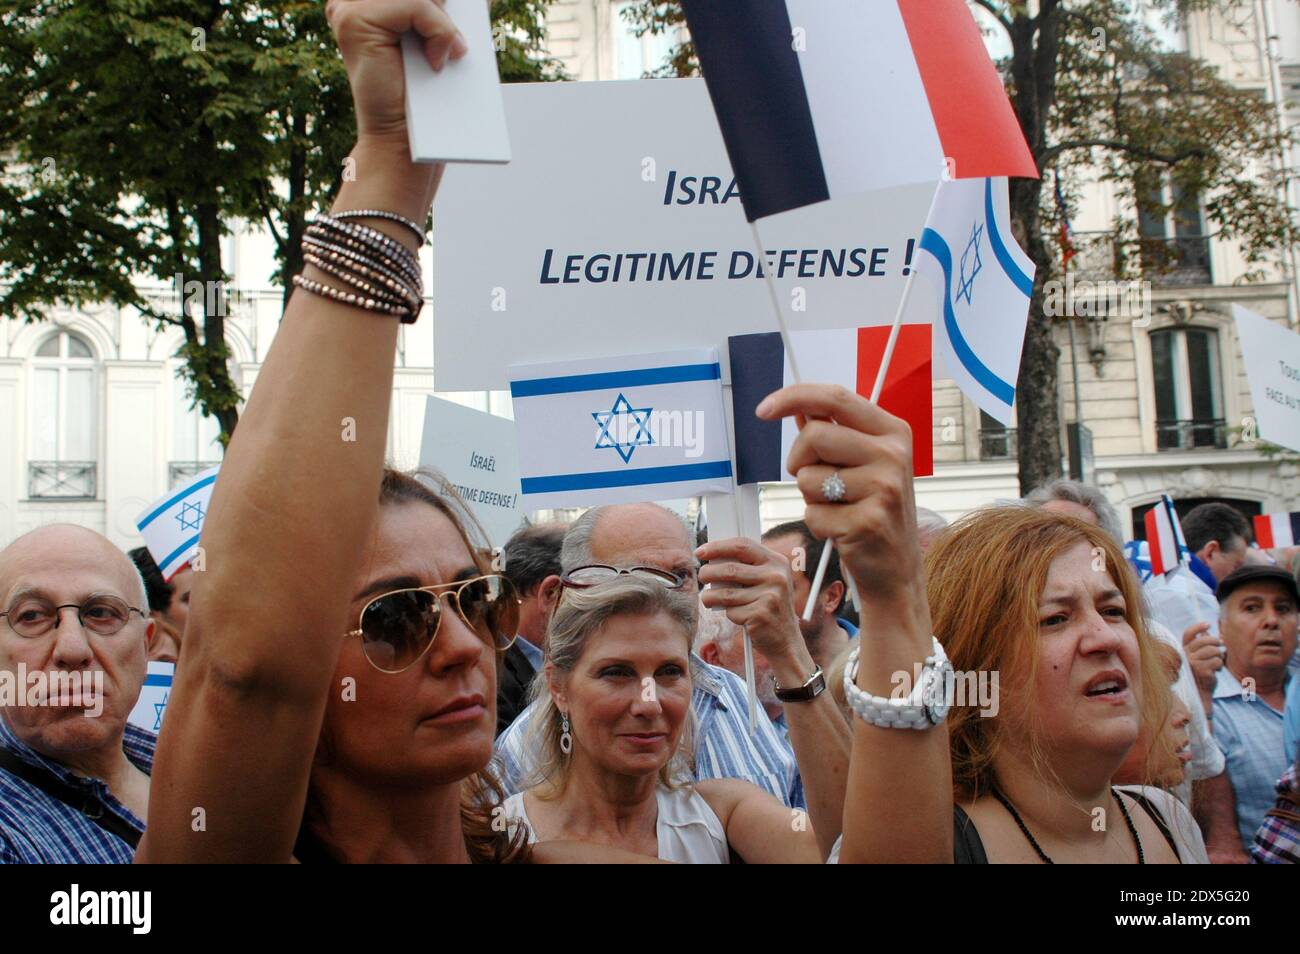 Am 31. Juli 2014 findet in Paris eine pro-israelische Demonstration statt, zu der der Repräsentativrat der jüdischen Institutionen in Frankreich (CRIF) vor der Botschaft des jüdischen Staates aufgerufen hat, da Frankreich erwägt, eine radikal-jüdische Gruppe, die Jewish Defence League (LDJ), aufzulösen. Deren Mitglieder bei Kundgebungen über die israelische Offensive in Gaza mit pro-palästinensischen Aktivisten zusammenstießen. Die Kundgebung ist eine Reaktion auf wochenlange pro-palästinensische Proteste, die von Zusammenstößen, Verhaftungen und Antisemitismusvorwürfen geprägt waren, bei denen Synagogen ins Visier genommen und israelische Flaggen verbrannt wurden. Foto von Alain Apaydin/ABACAPRESS.COM Stockfoto